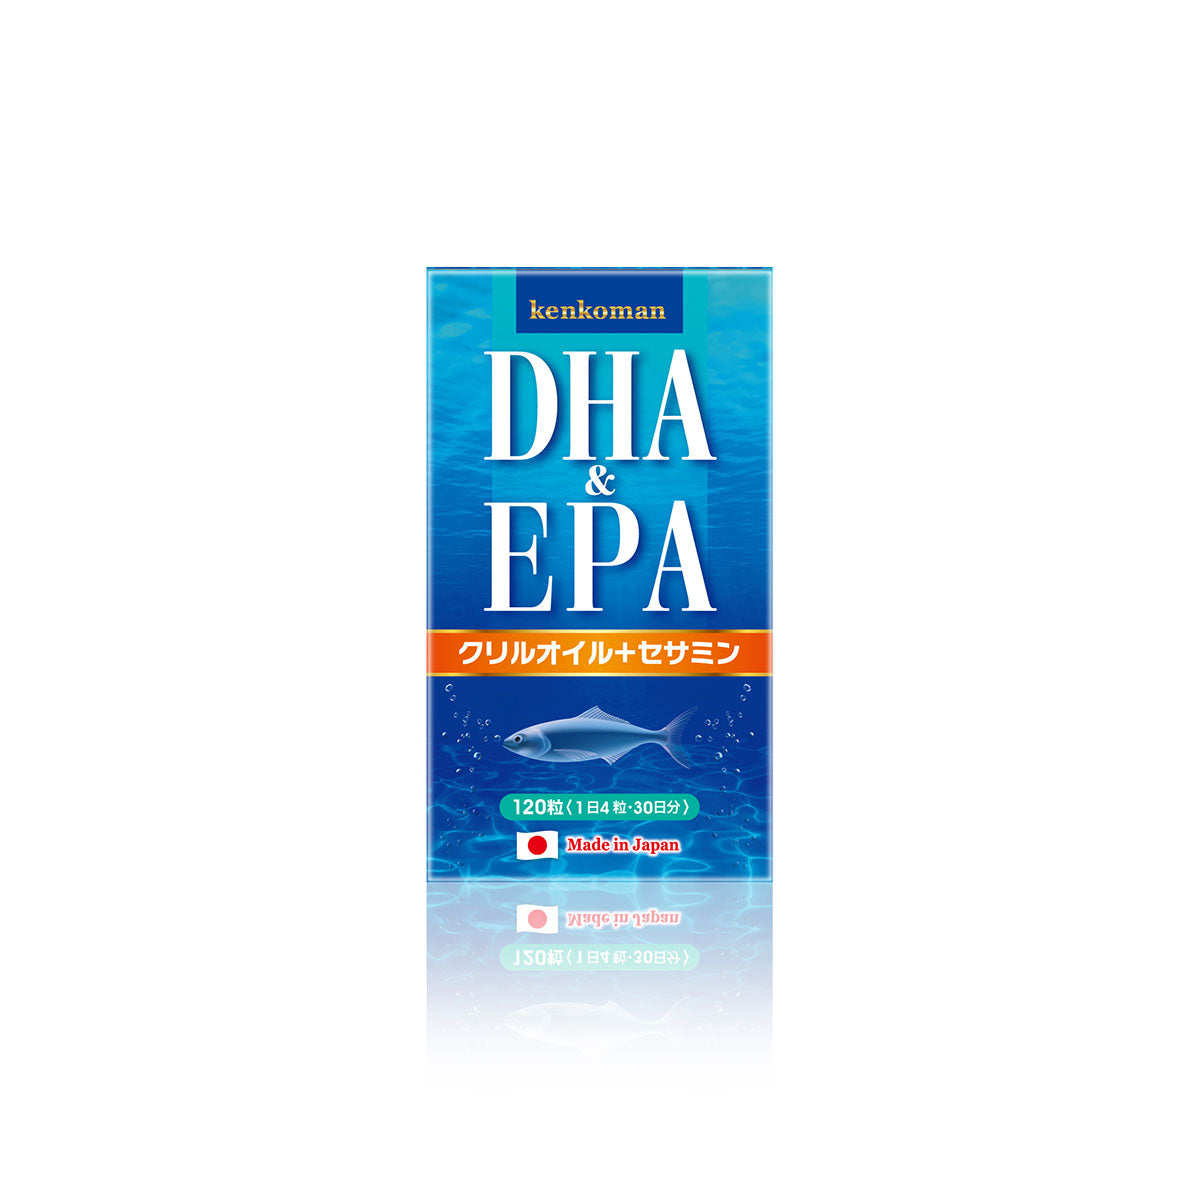 DHA和EPA